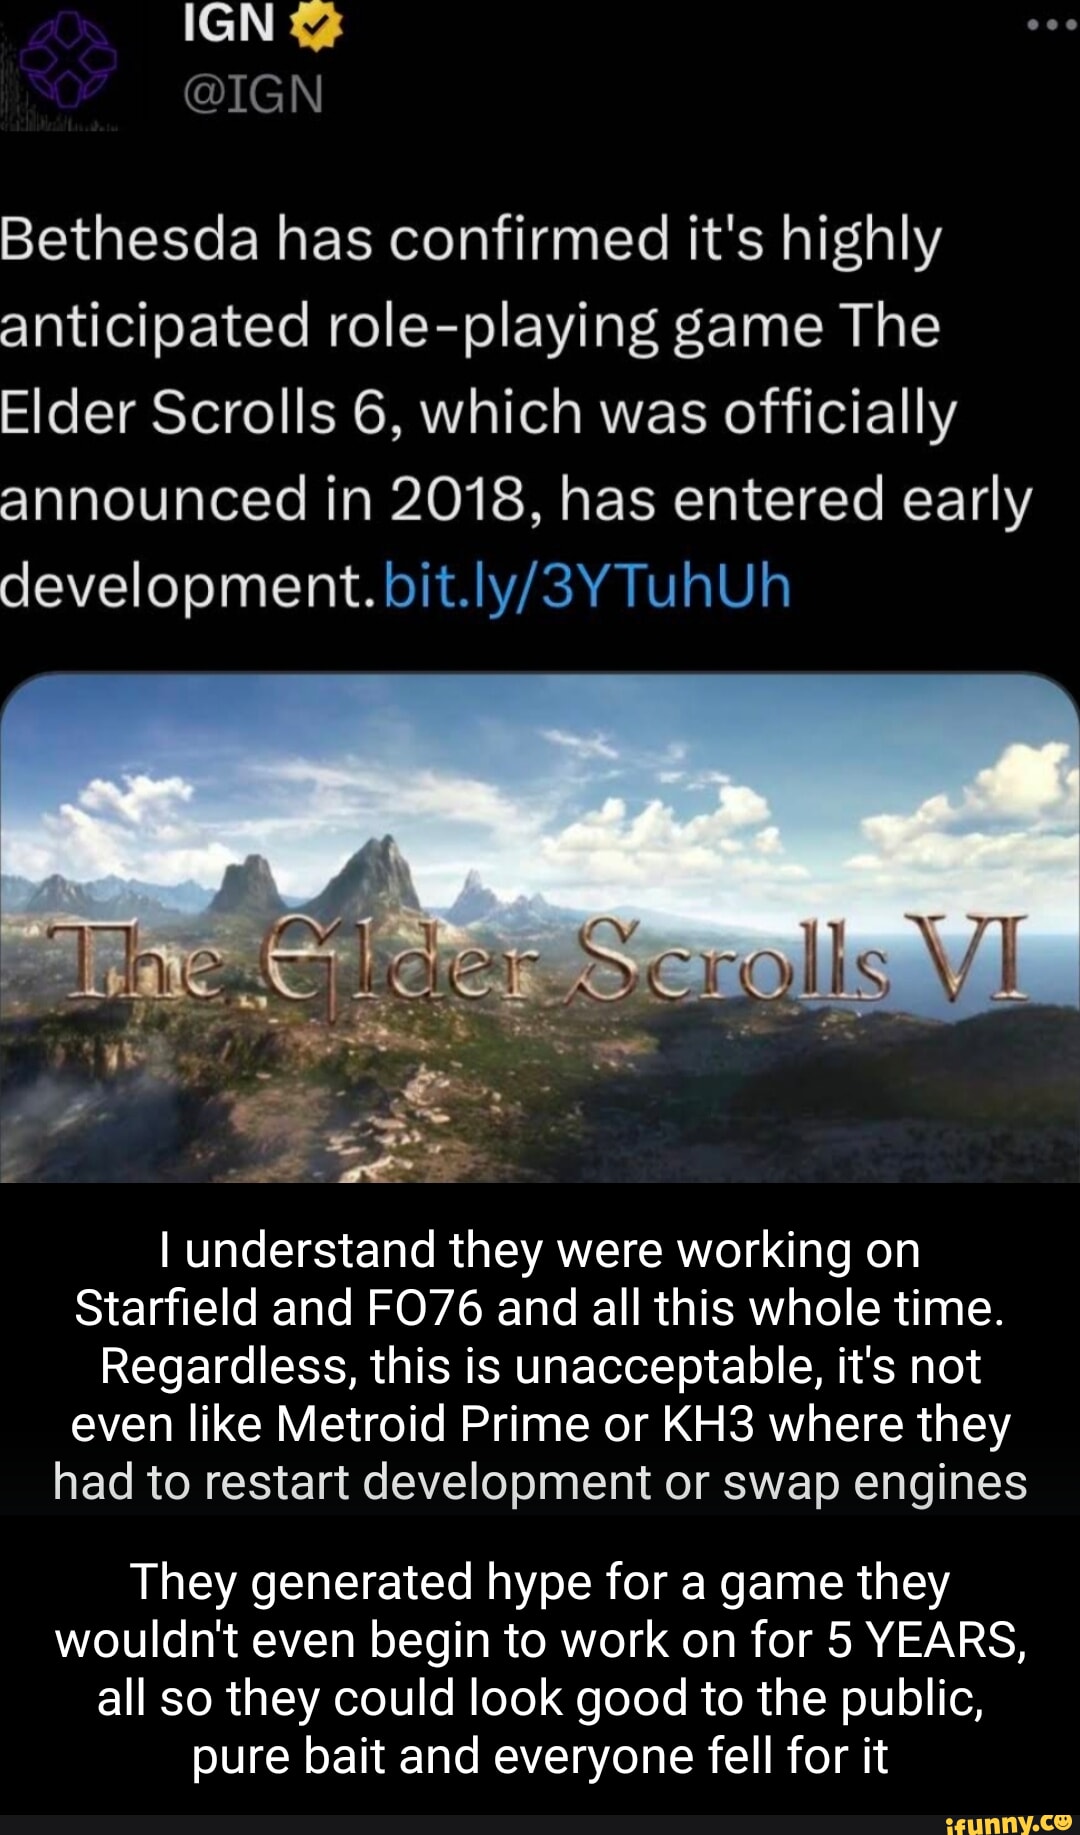 The Elder Scrolls 6 is officially in early development